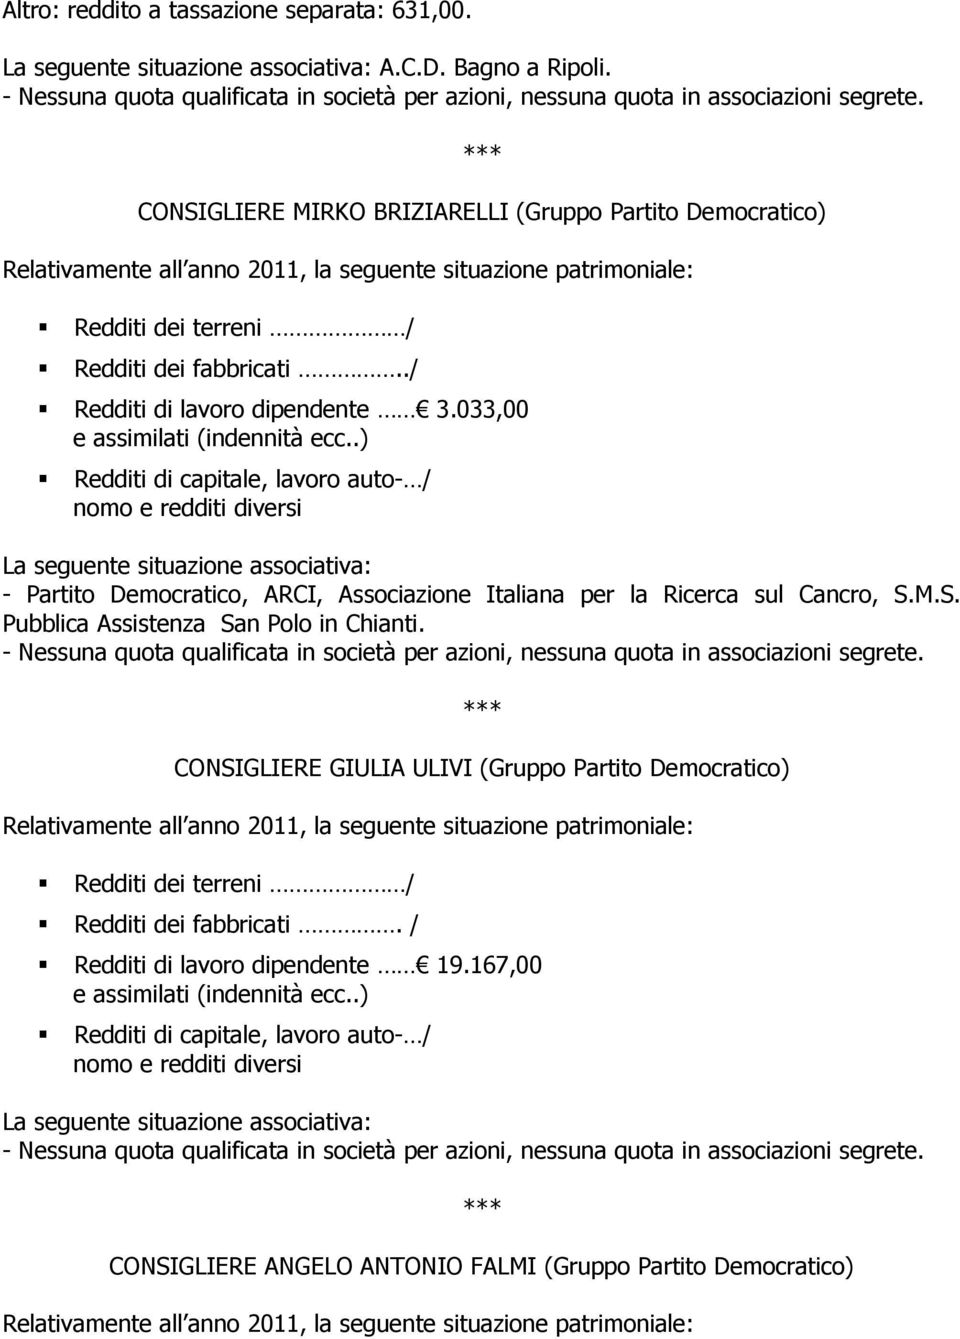 033,00 - Partito Democratico, ARCI, Associazione Italiana per la Ricerca sul Cancro, S.